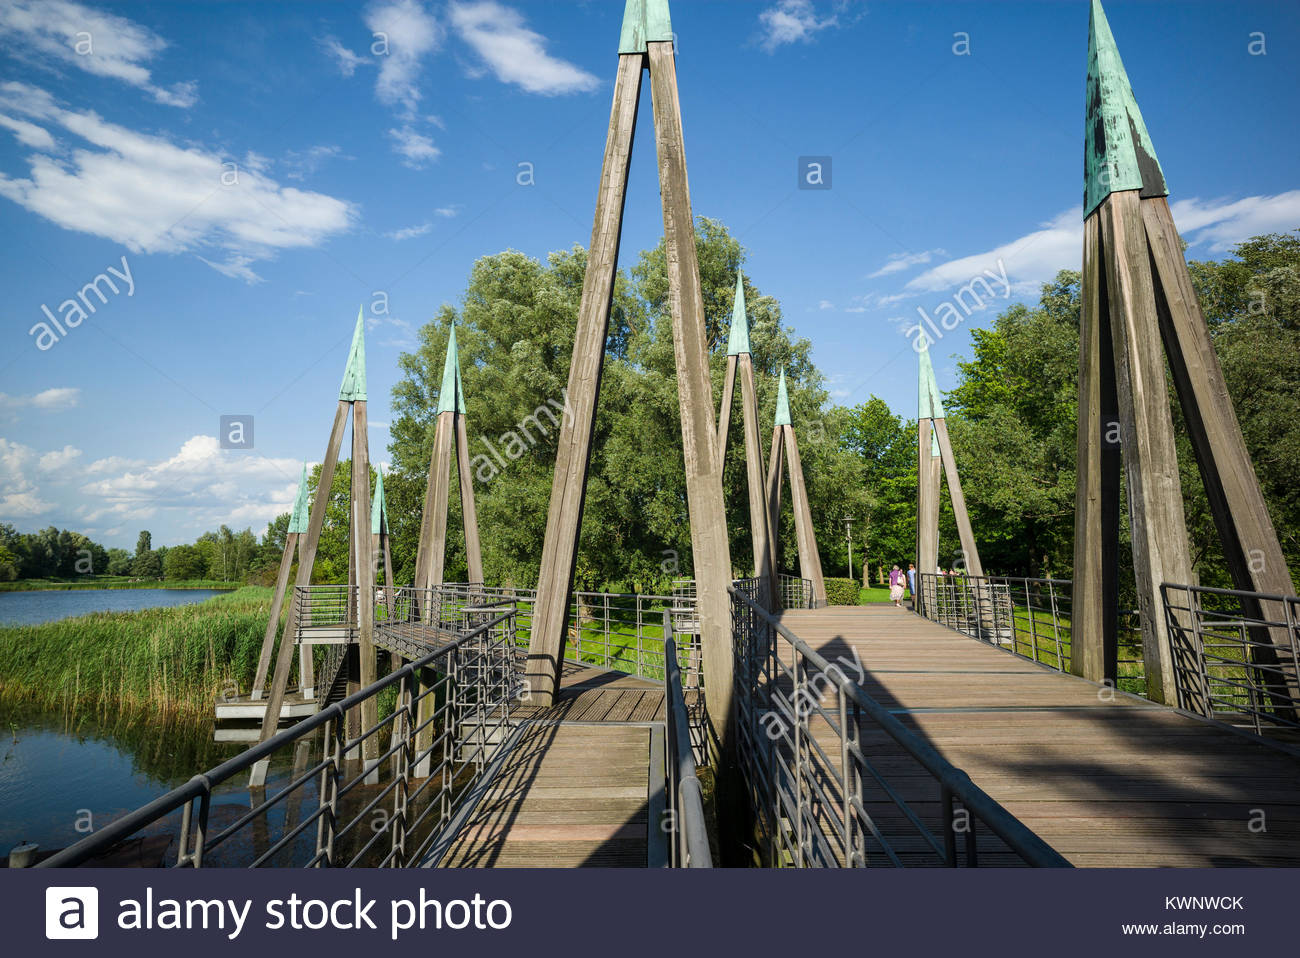 Berlin Britzer Garten Genial Bridge In Park In Berlin Stock S & Bridge In Park In